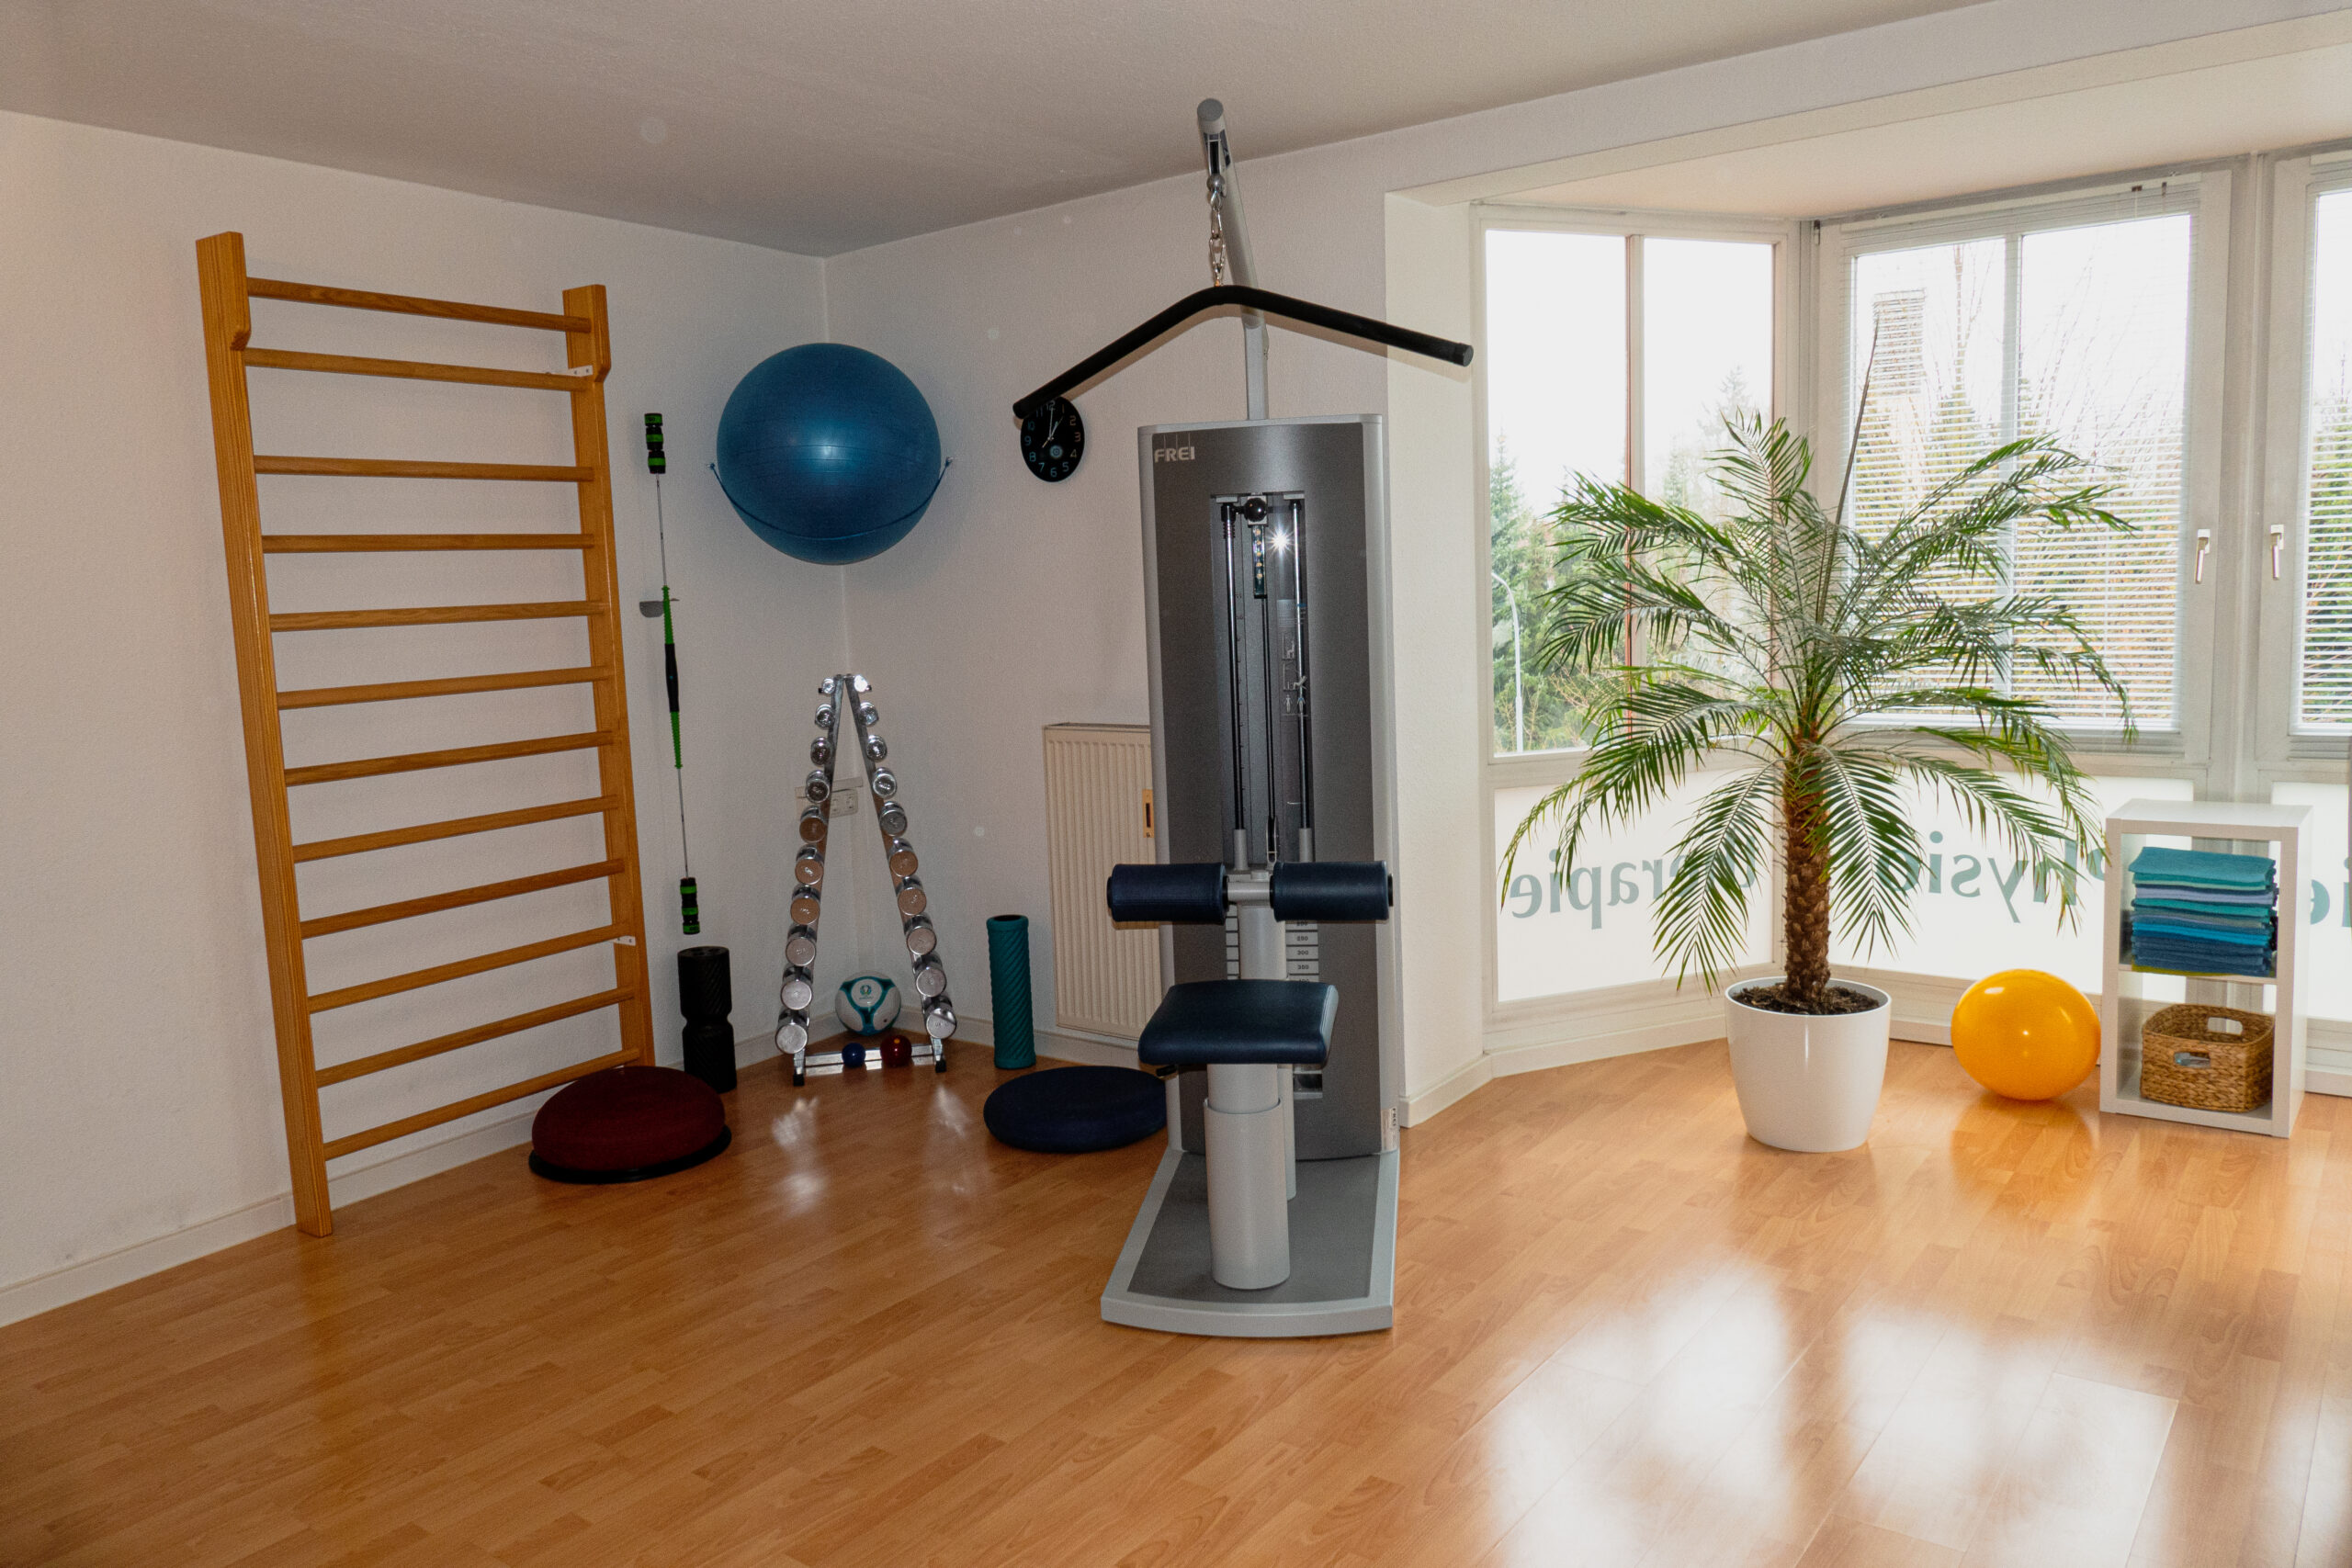 Der gut ausgestattete Gymnastikraum bietet vielfältige Trainingsmöglichkeiten für unsere Patienten, um ihre Beweglichkeit und Kraft gezielt zu verbessern.